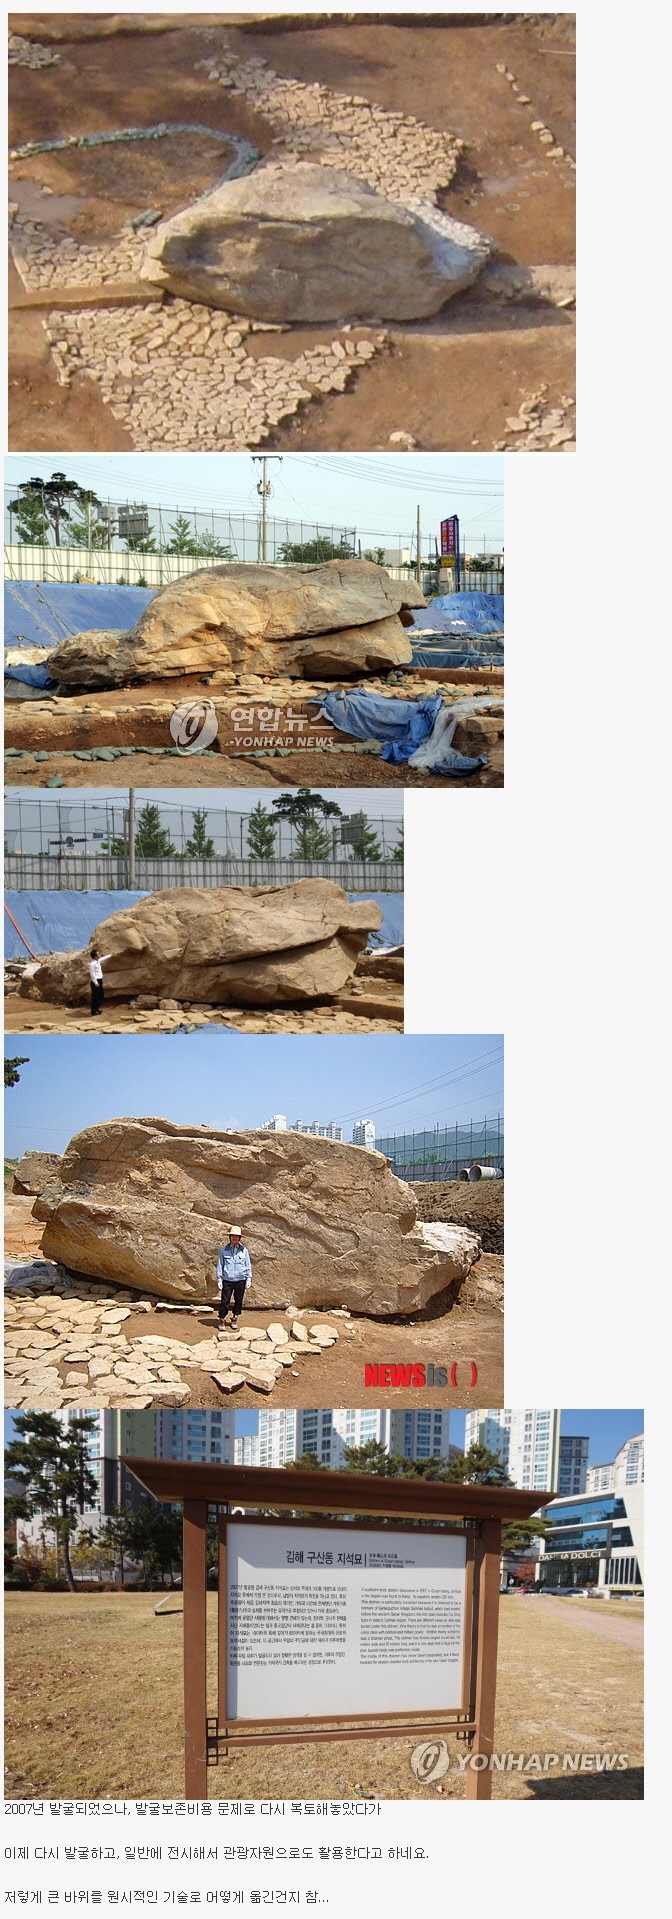 국내에서 가장 큰 규모라는 고인돌